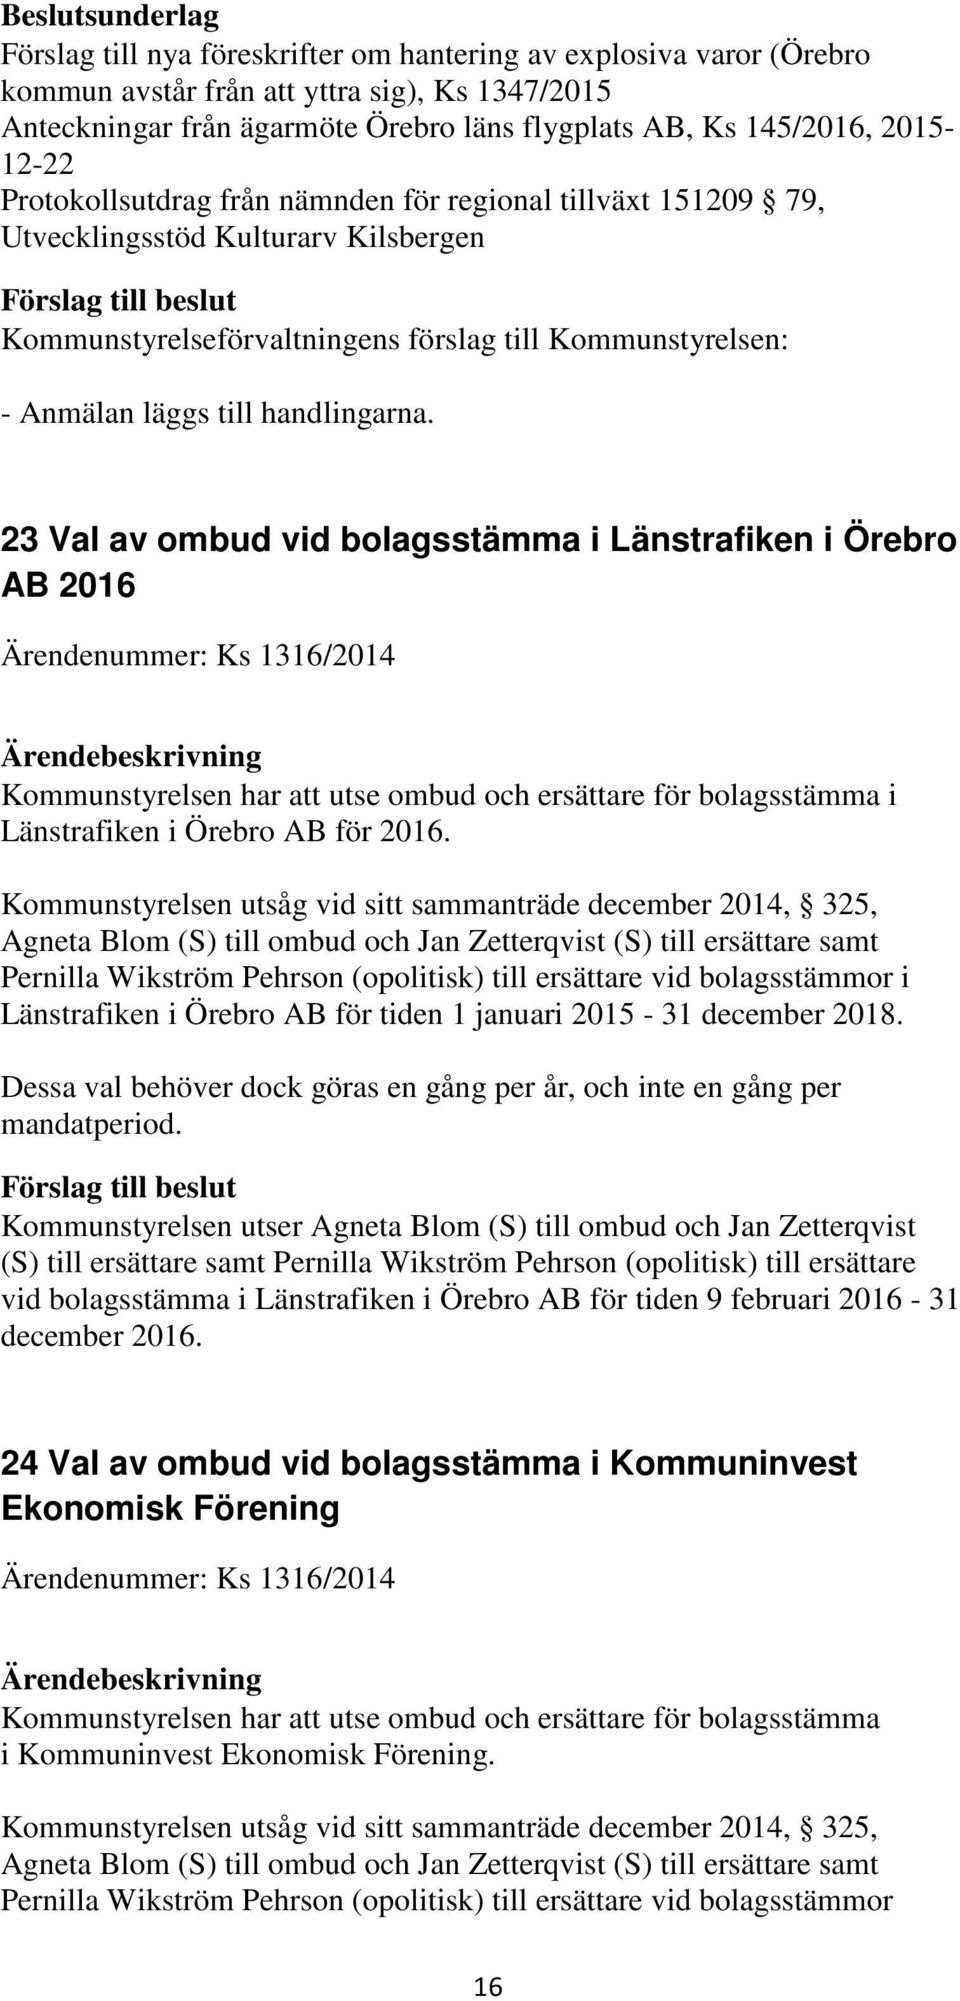 23 Val av ombud vid bolagsstämma i Länstrafiken i Örebro AB 2016 Ärendenummer: Ks 1316/2014 Kommunstyrelsen har att utse ombud och ersättare för bolagsstämma i Länstrafiken i Örebro AB för 2016.